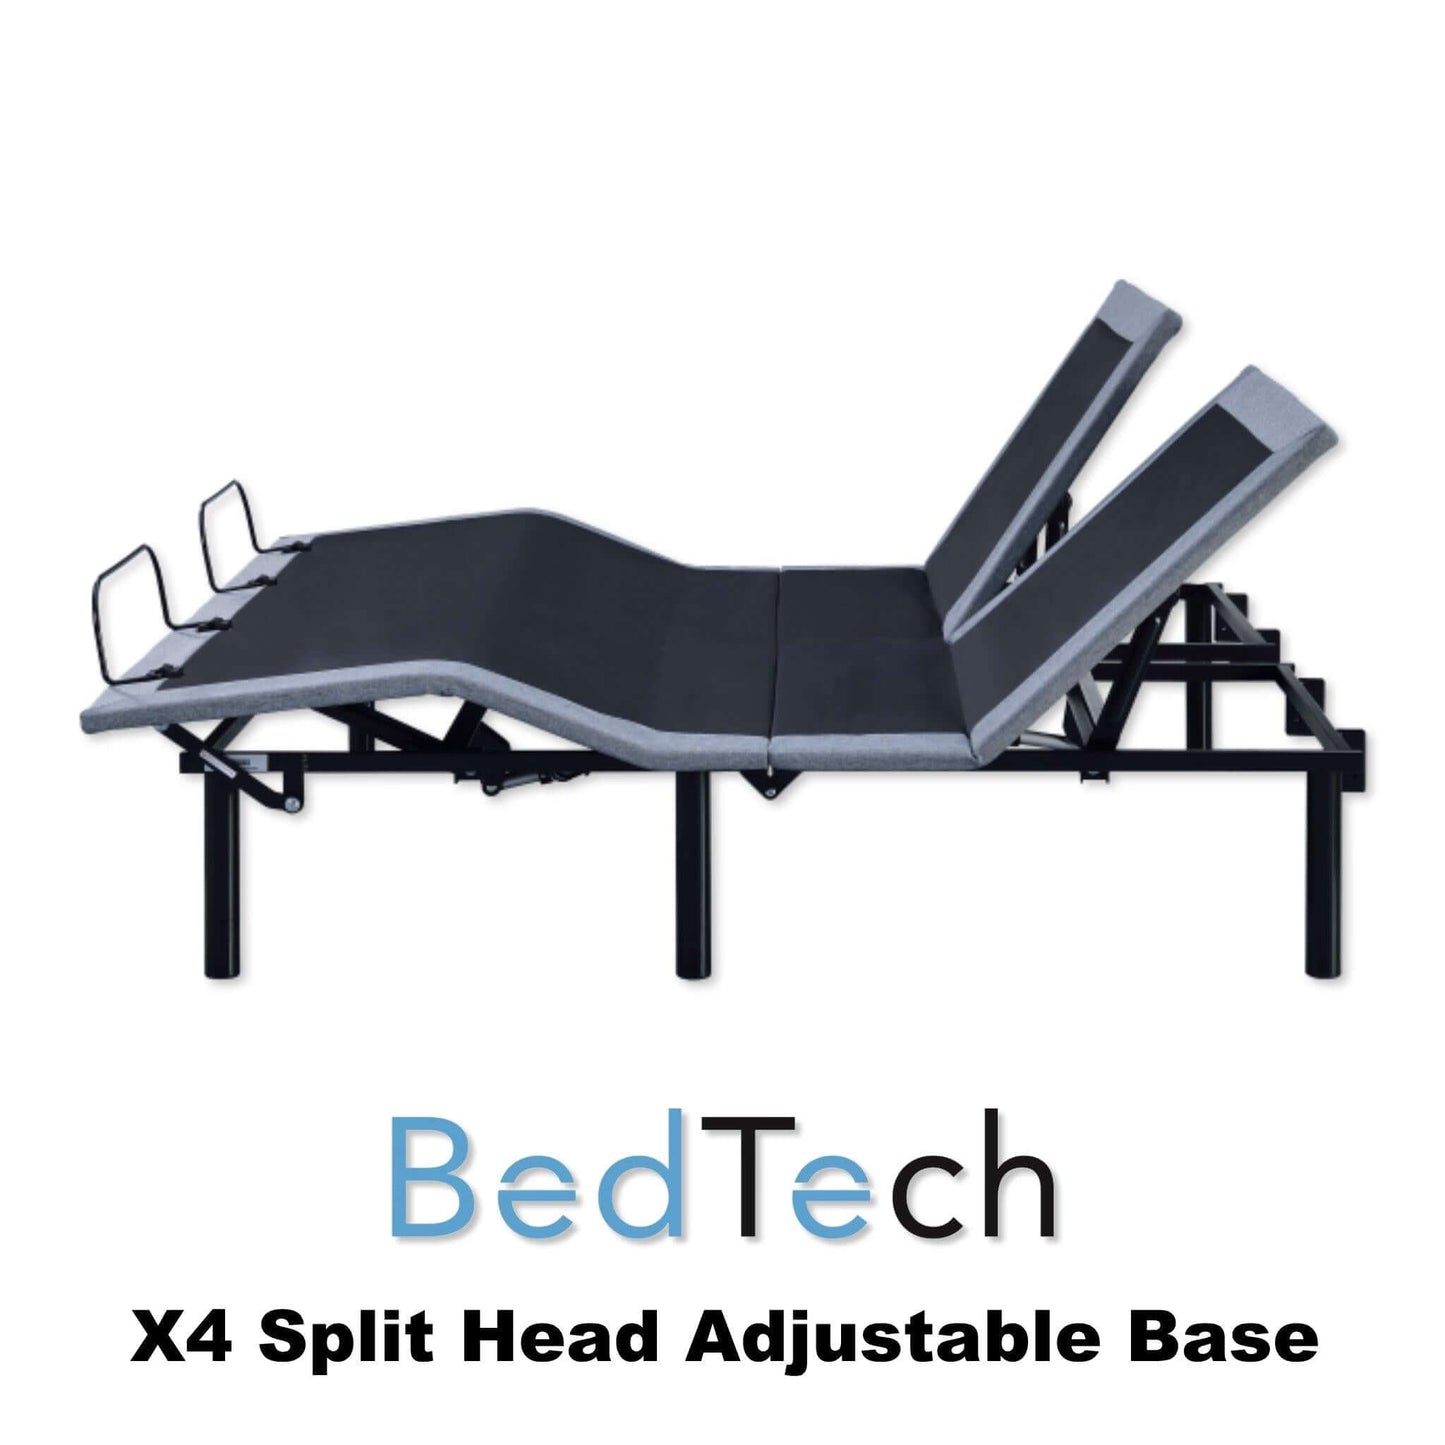 X4 Split Head Queen Adjustable Base by BedTech - Mattress Central LLC